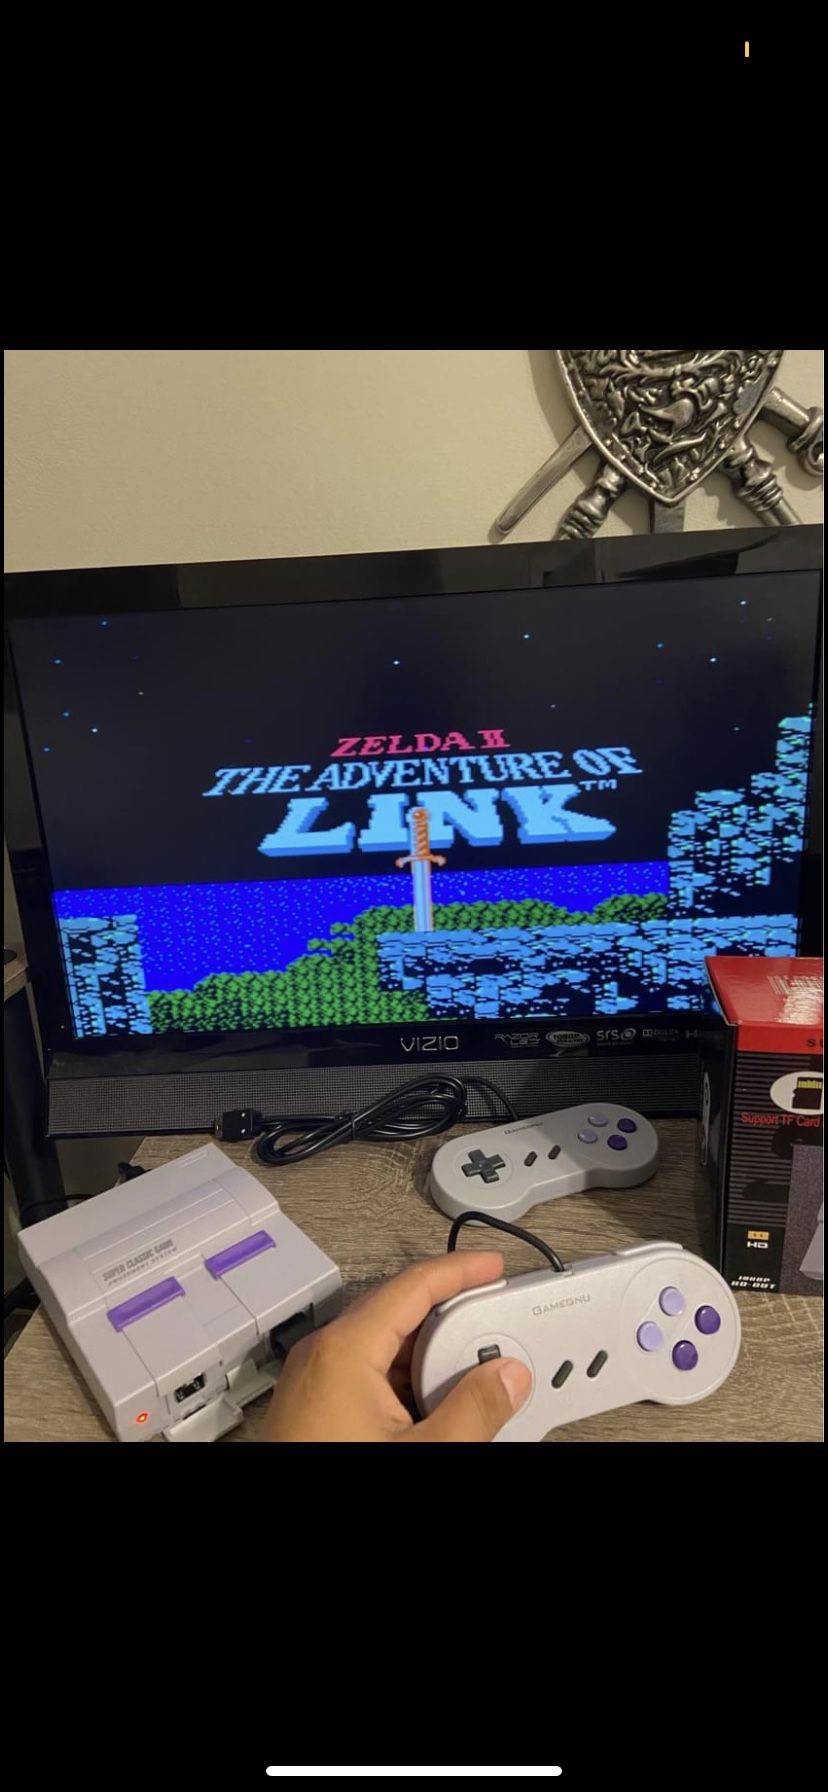 Retro console Super mini NES HDMI Arcade Games 👾 Classic Games Shipping Available ✅